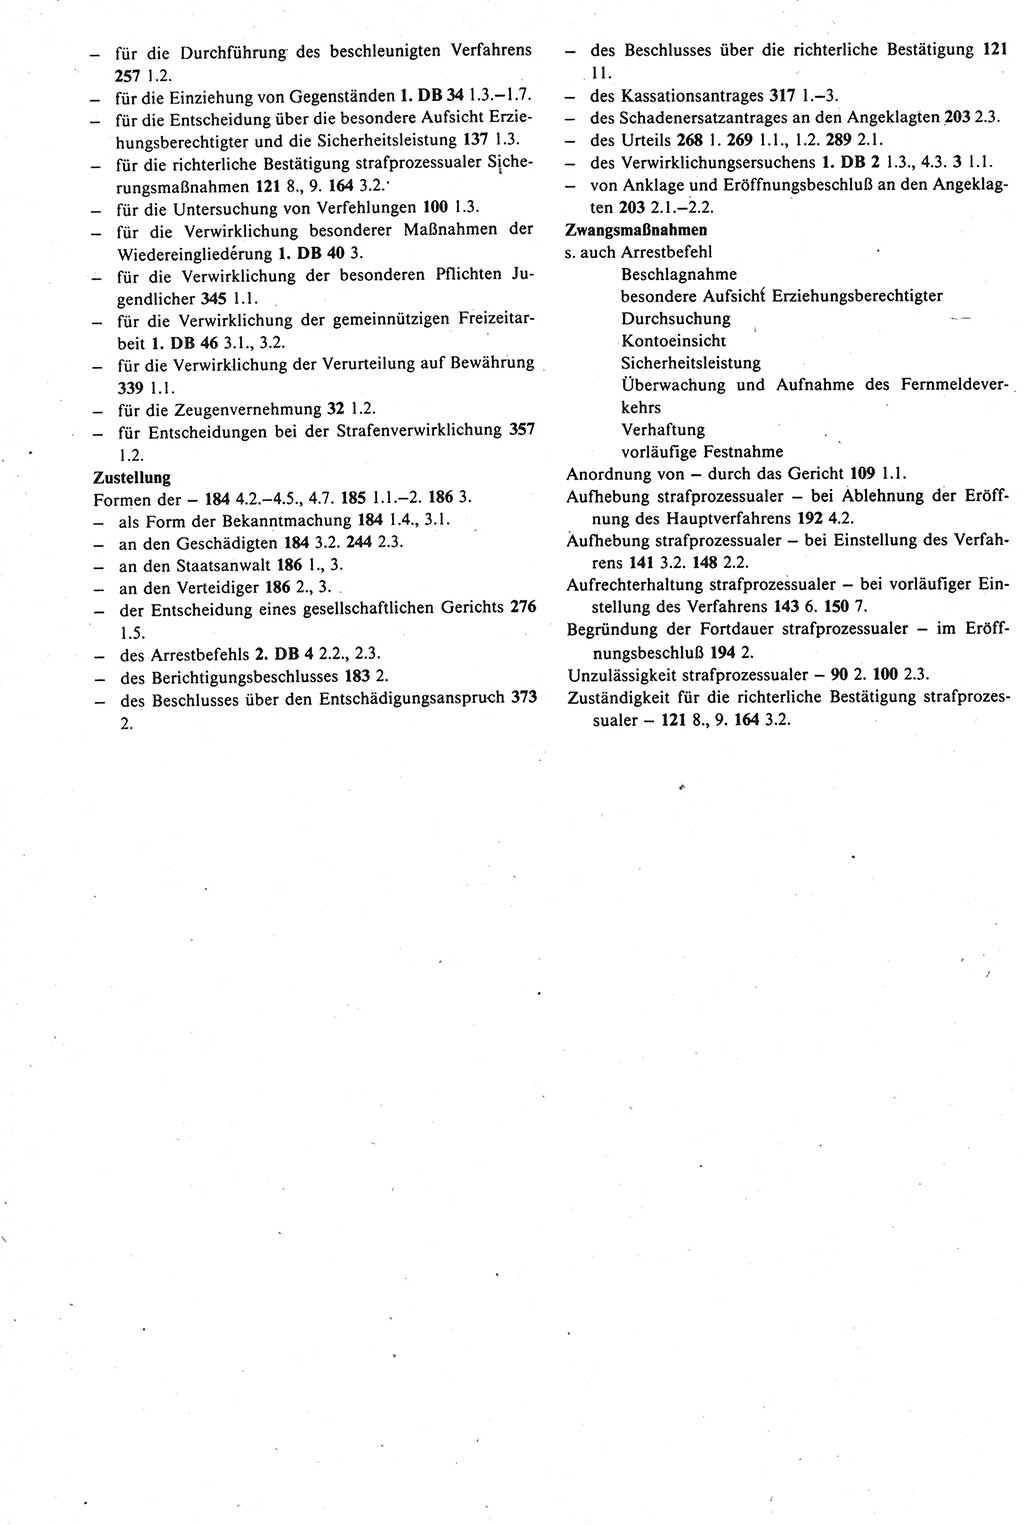 Strafprozeßrecht der DDR [Deutsche Demokratische Republik], Kommentar zur Strafprozeßordnung (StPO) 1987, Seite 544 (Strafprozeßr. DDR Komm. StPO 1987, S. 544)